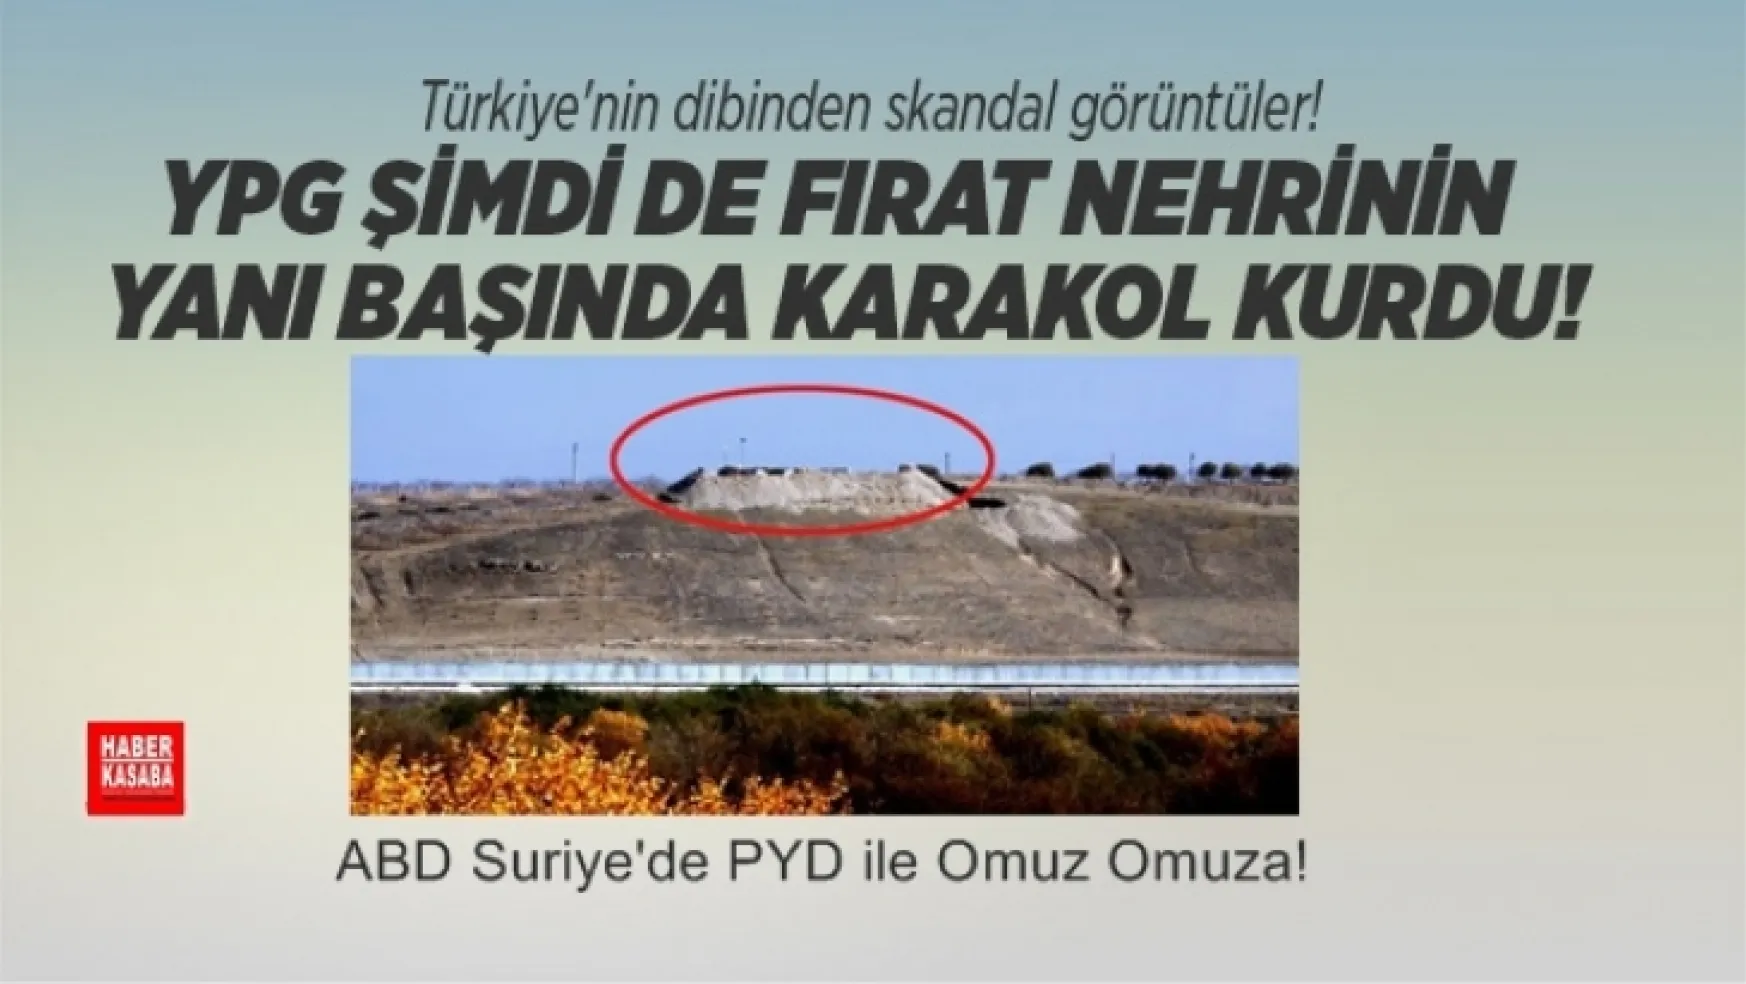 YPG Fırat nehrinin yanı başında karakol kurdu!